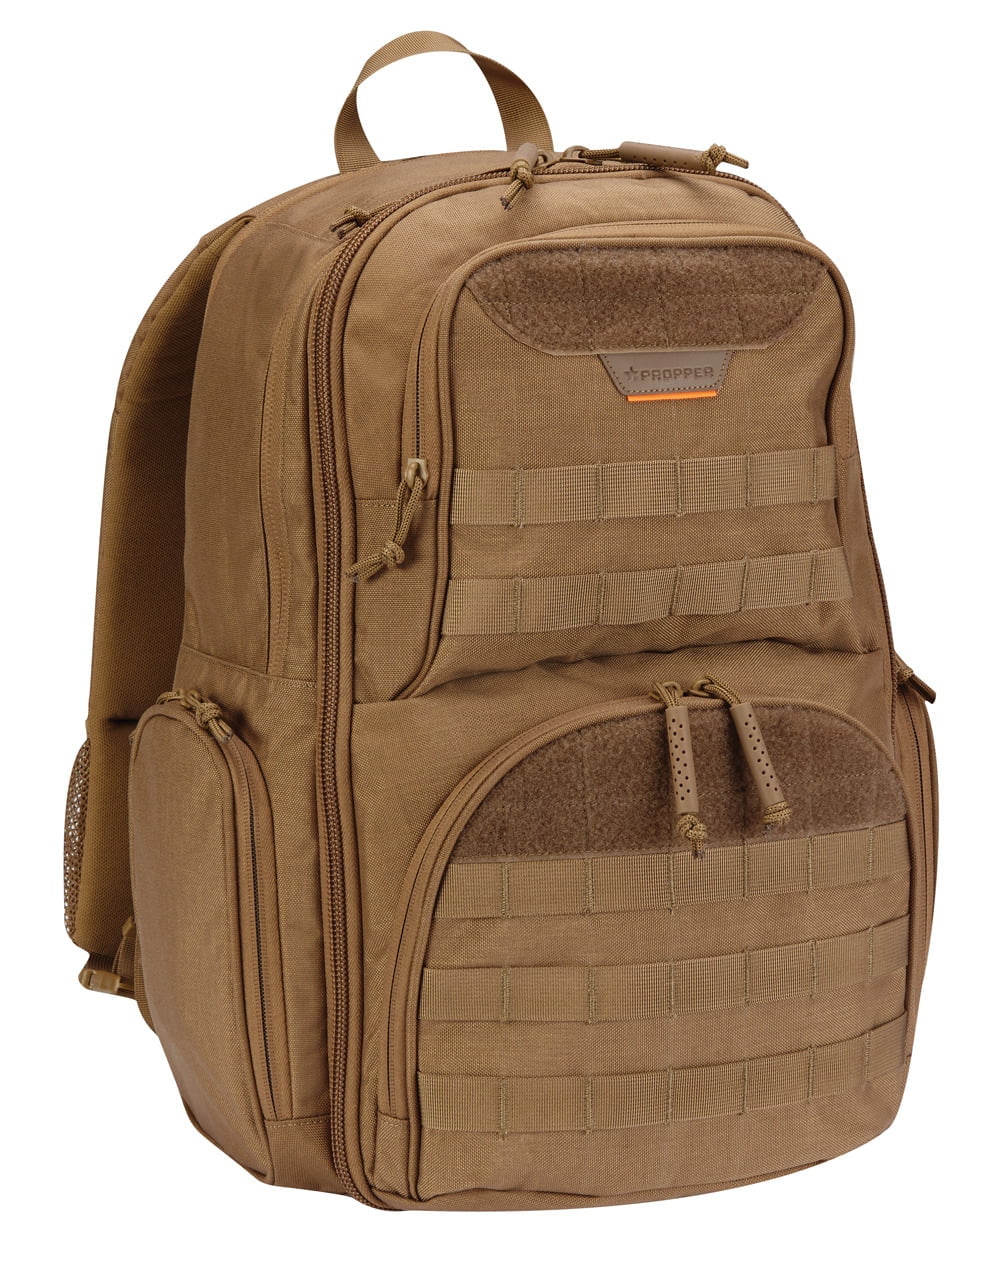 Packable Backpack,Olive - Walmart.com